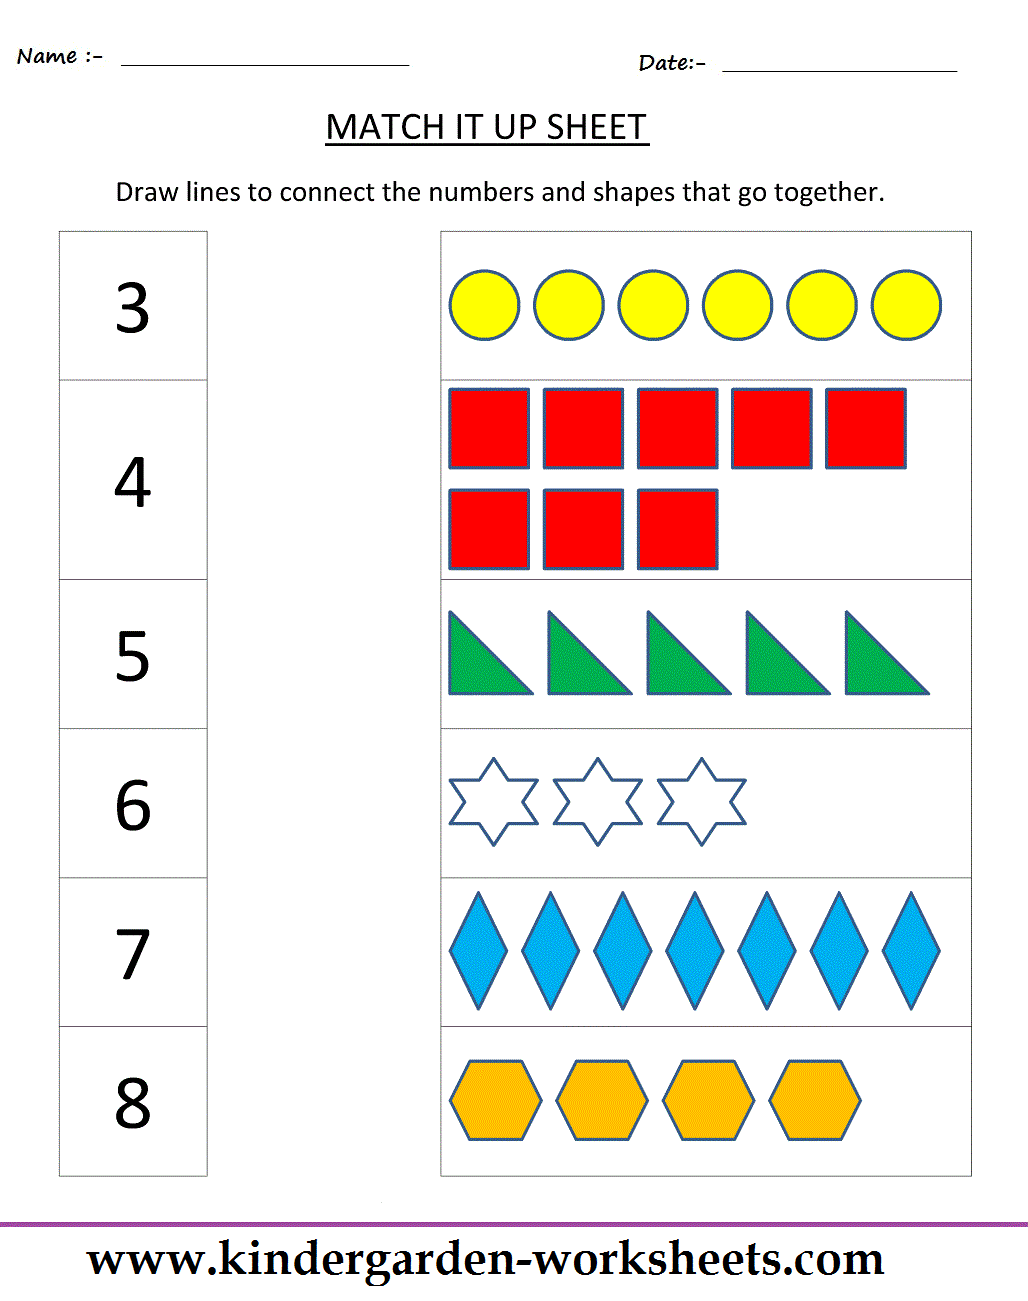 kindergarten-worksheets-maths-worksheets-matching-worksheets